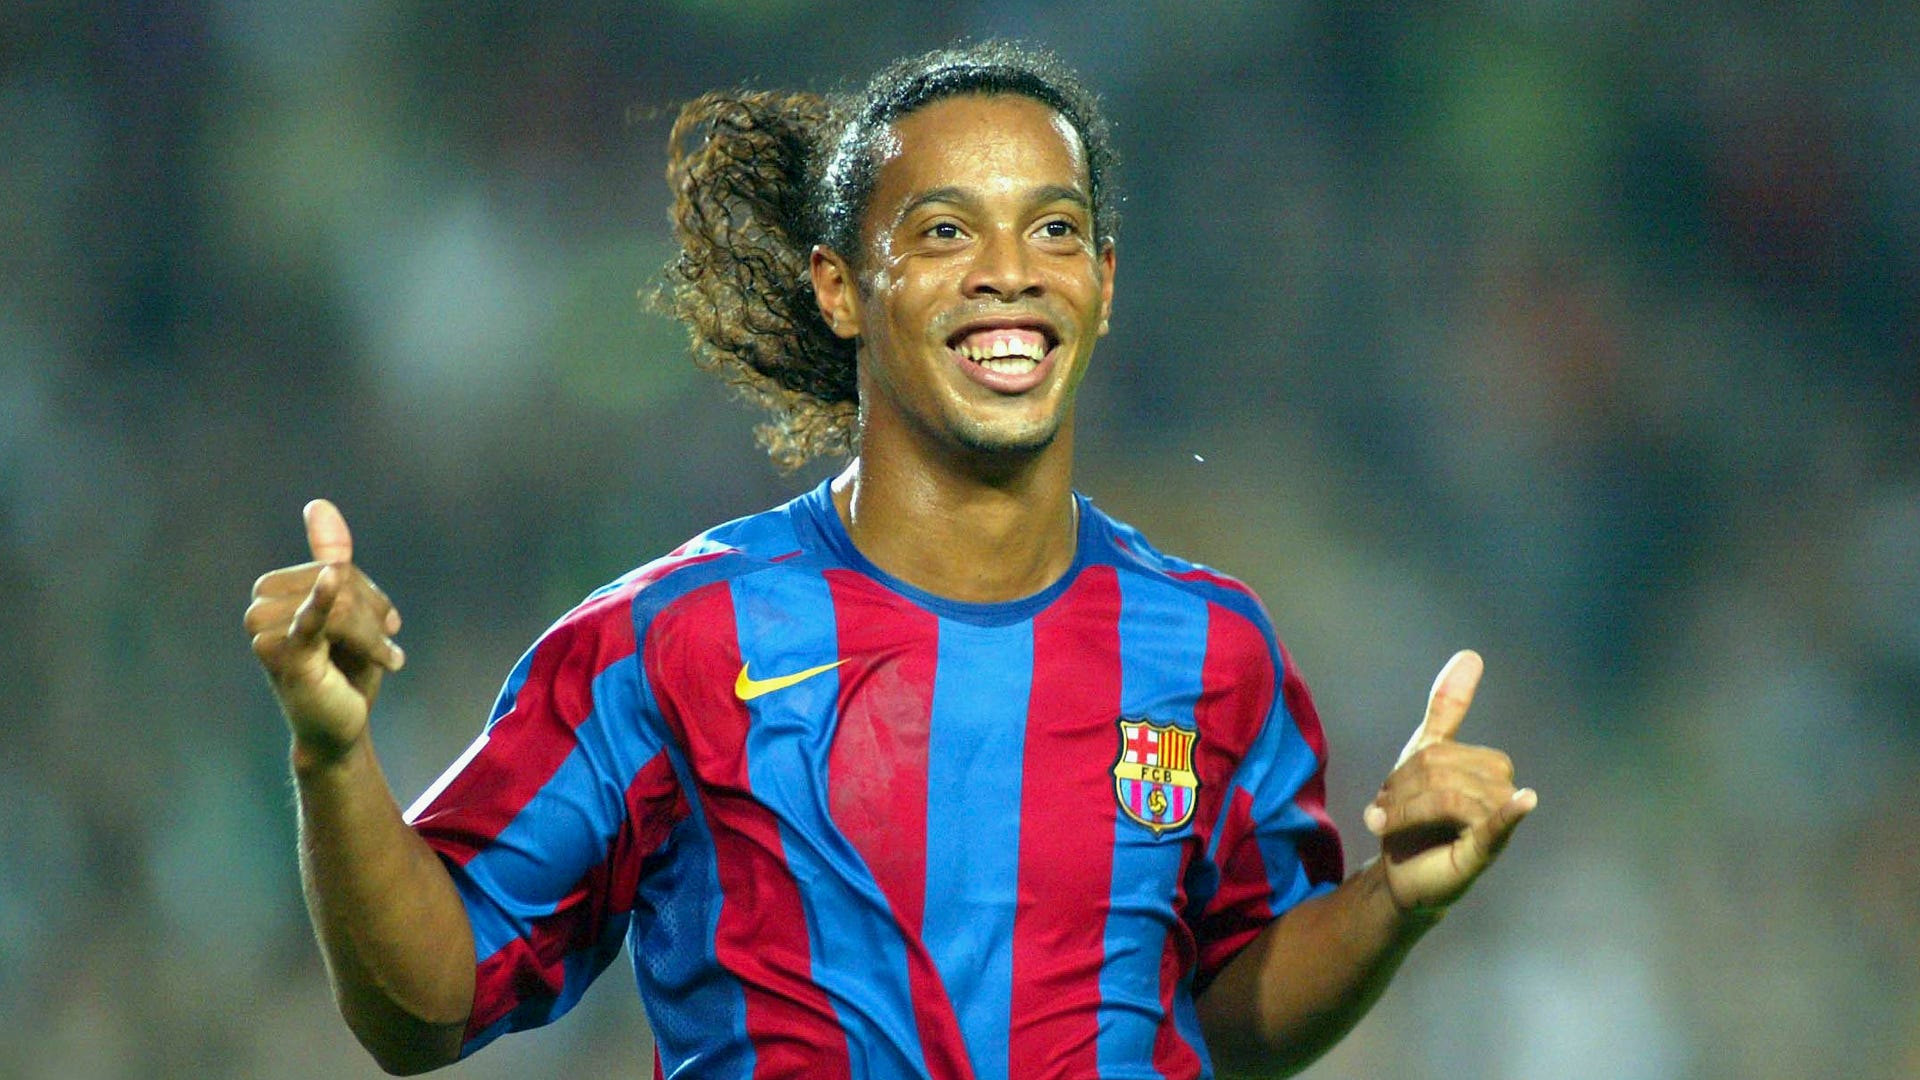 Todos falamos de Messi e CR7, mas Ronaldinho era especial", diz Luis García | Goal.com Brasil